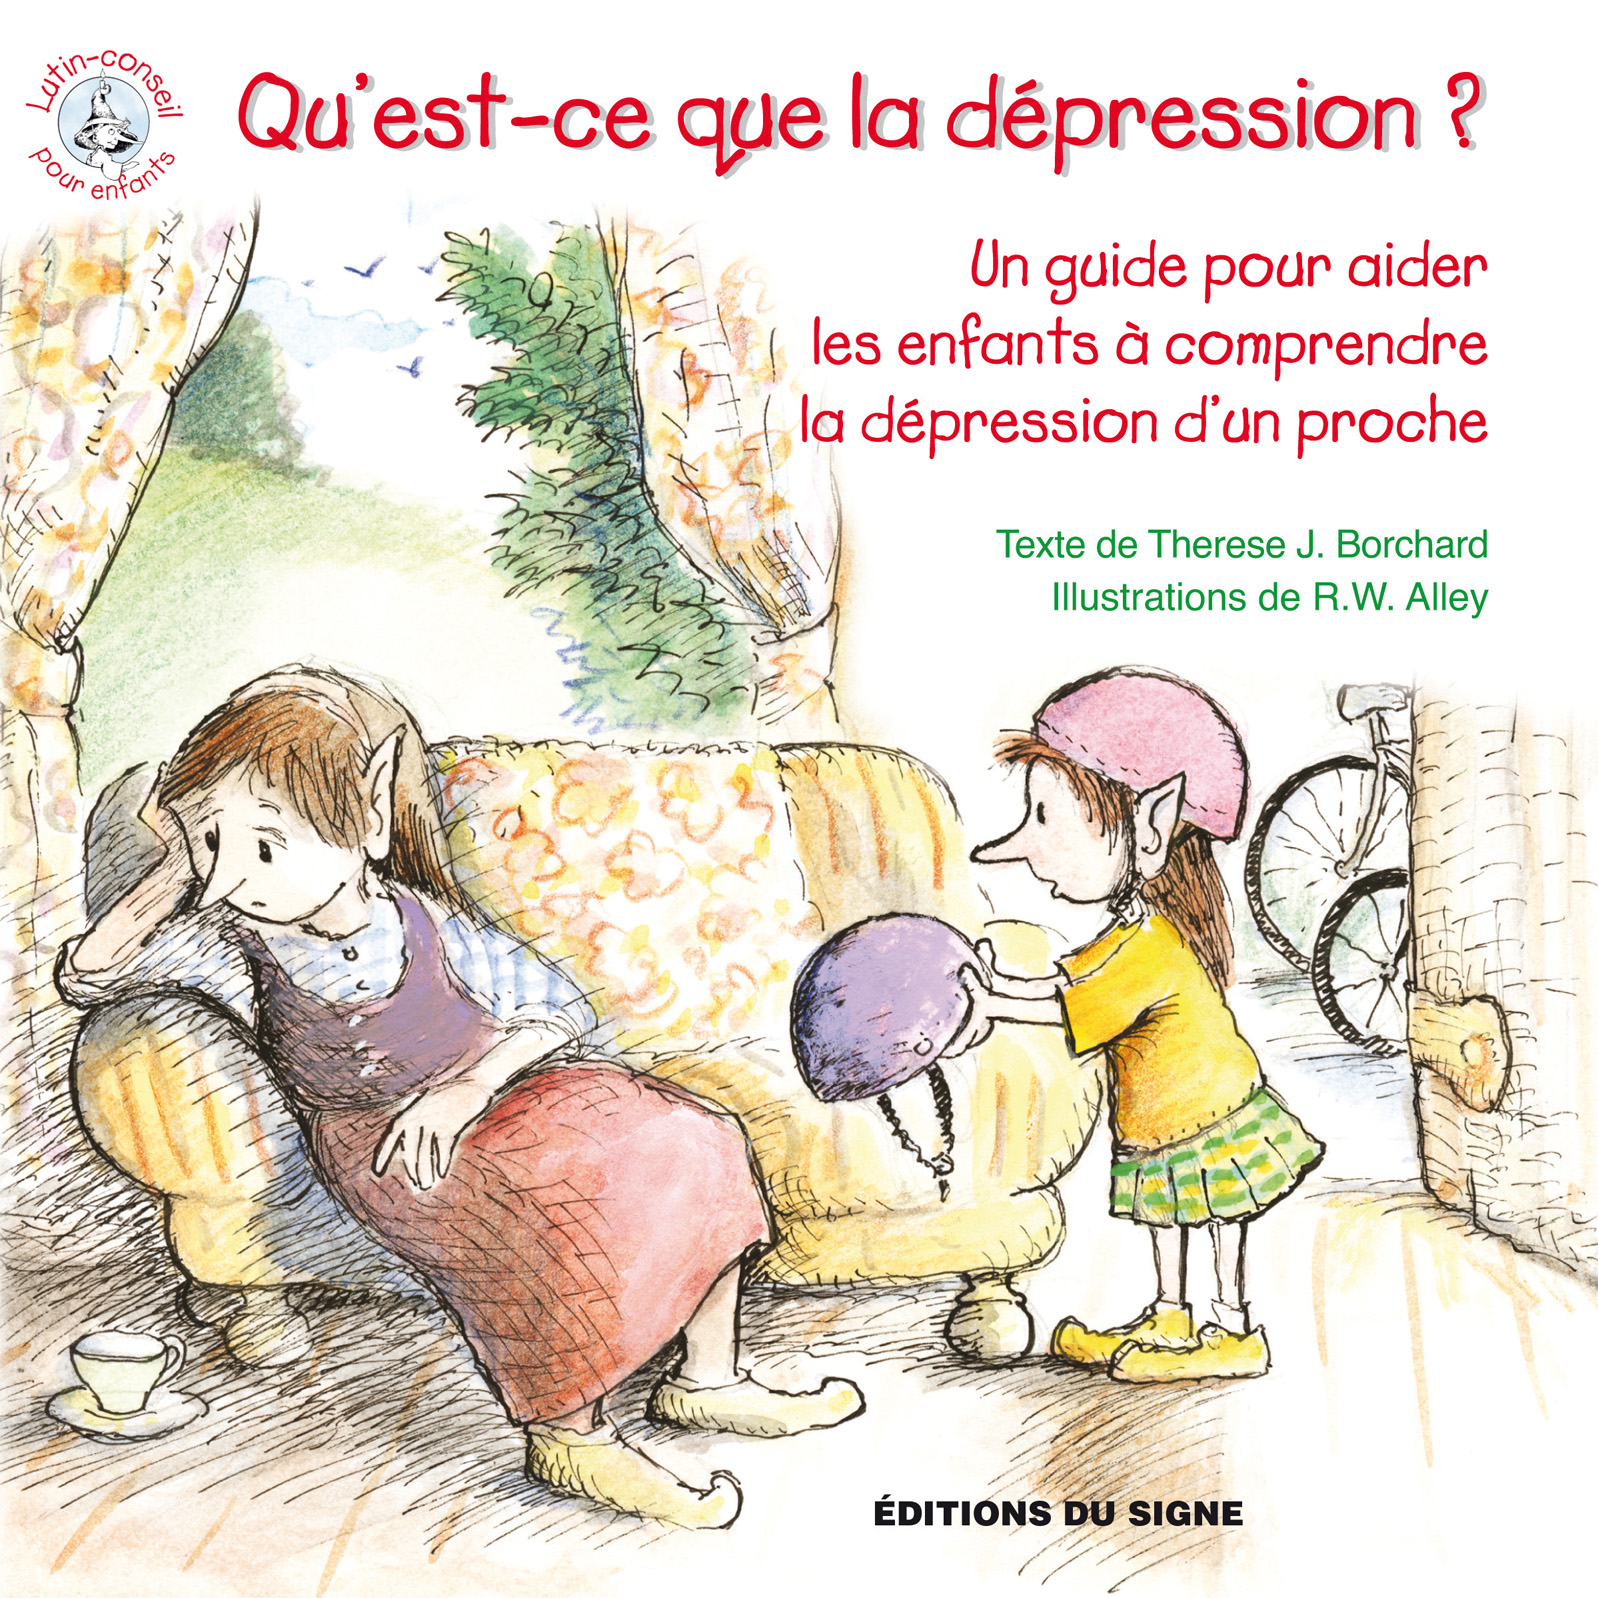 Qu'est ce que la dépression? Un guide pour aider les enfants à comprendre la dépression d'un proche